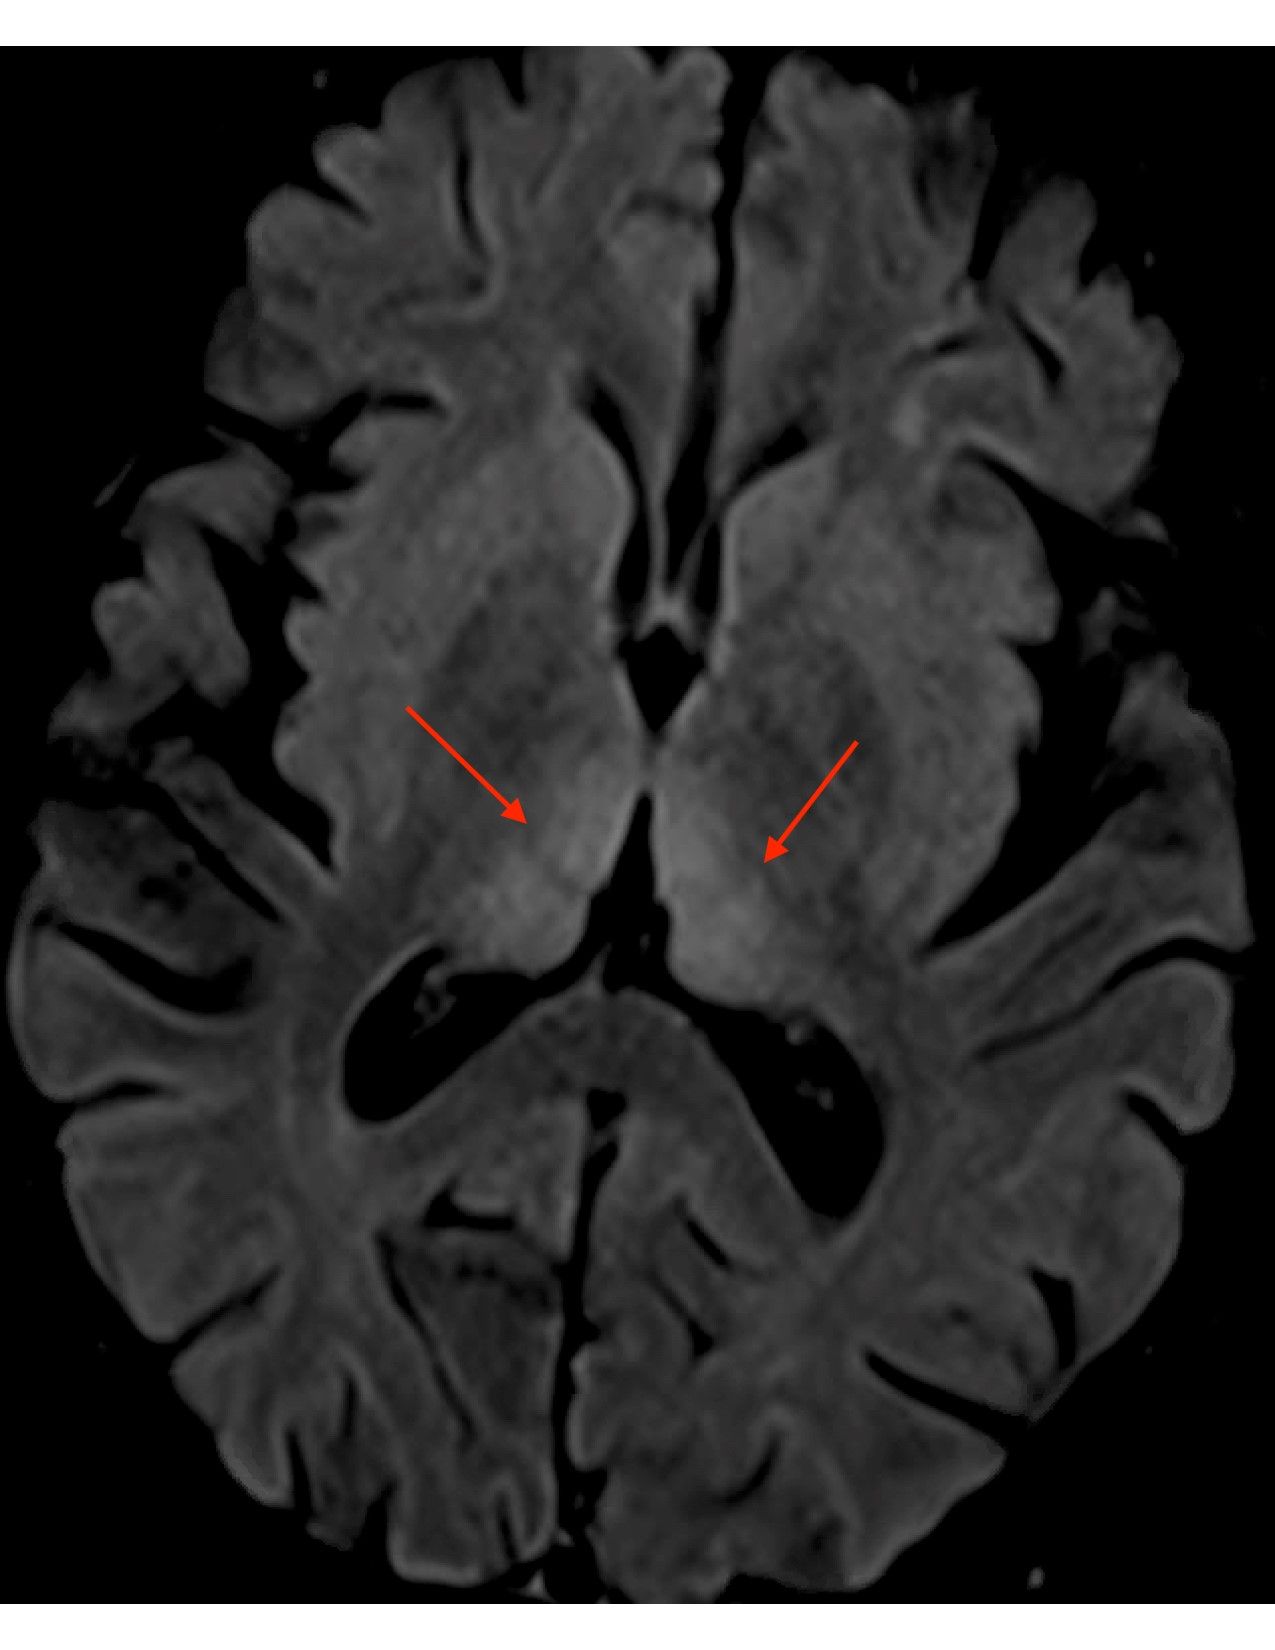 MRI brain scan axial FLAIR increased signal periaqueductal gray matter